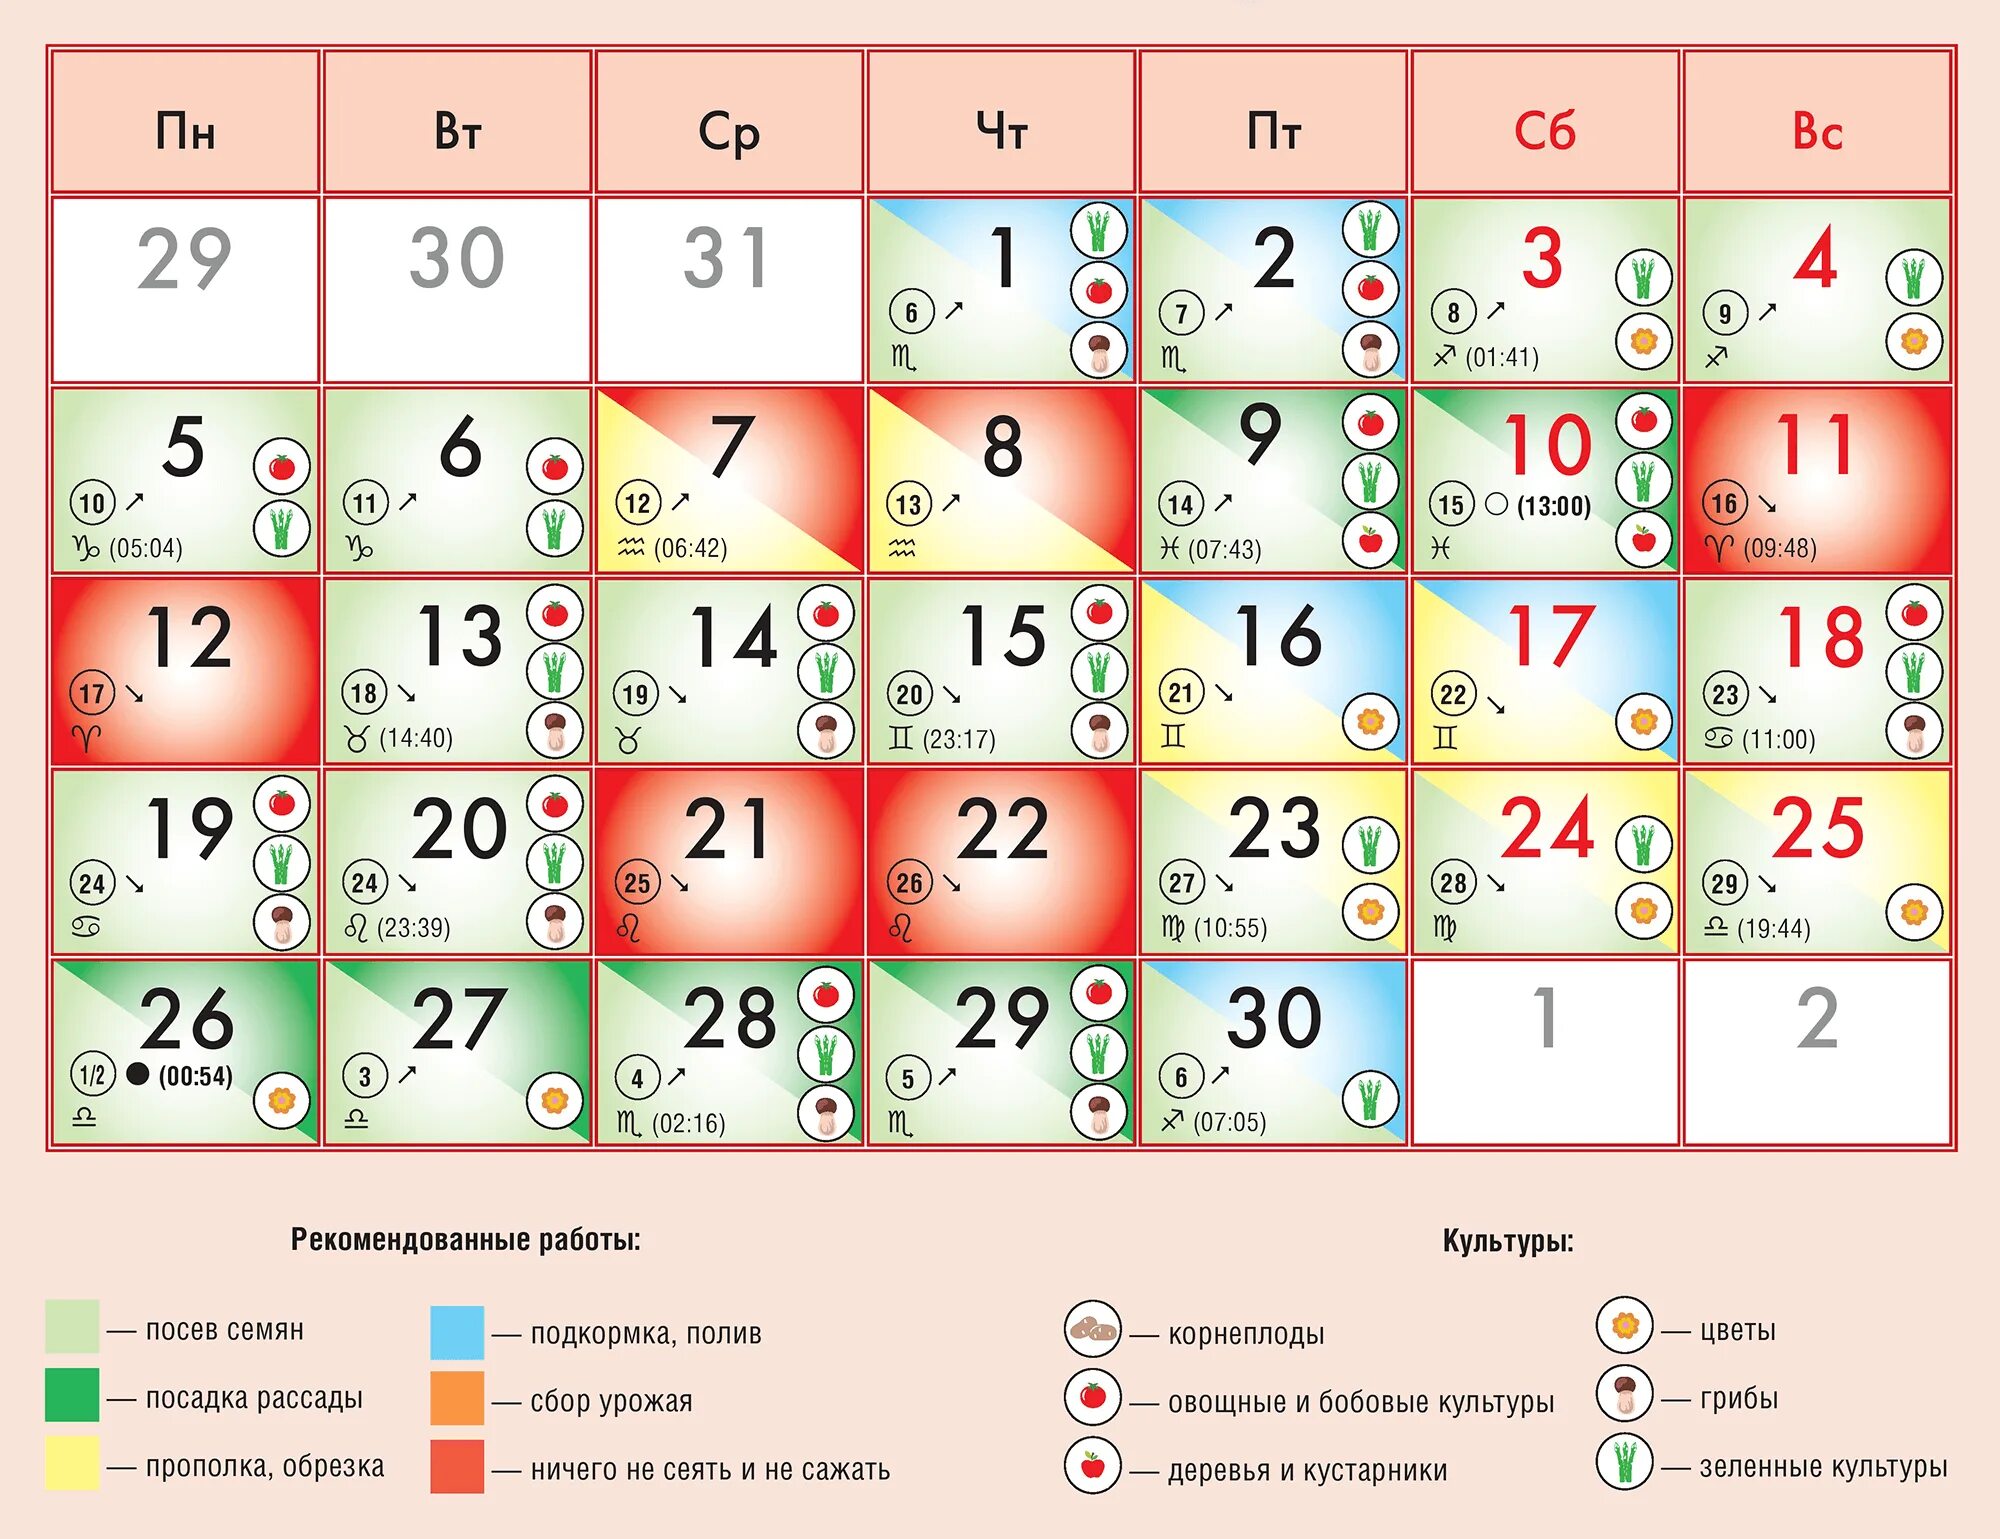 Лунный календарь на сентябрь 2022. Лунный календарь на сентябрь 2022 года. Календарь благоприятных дней для посадки. Благоприятные дни посадки в сентябре 2022 г. Пересадка в сентябре